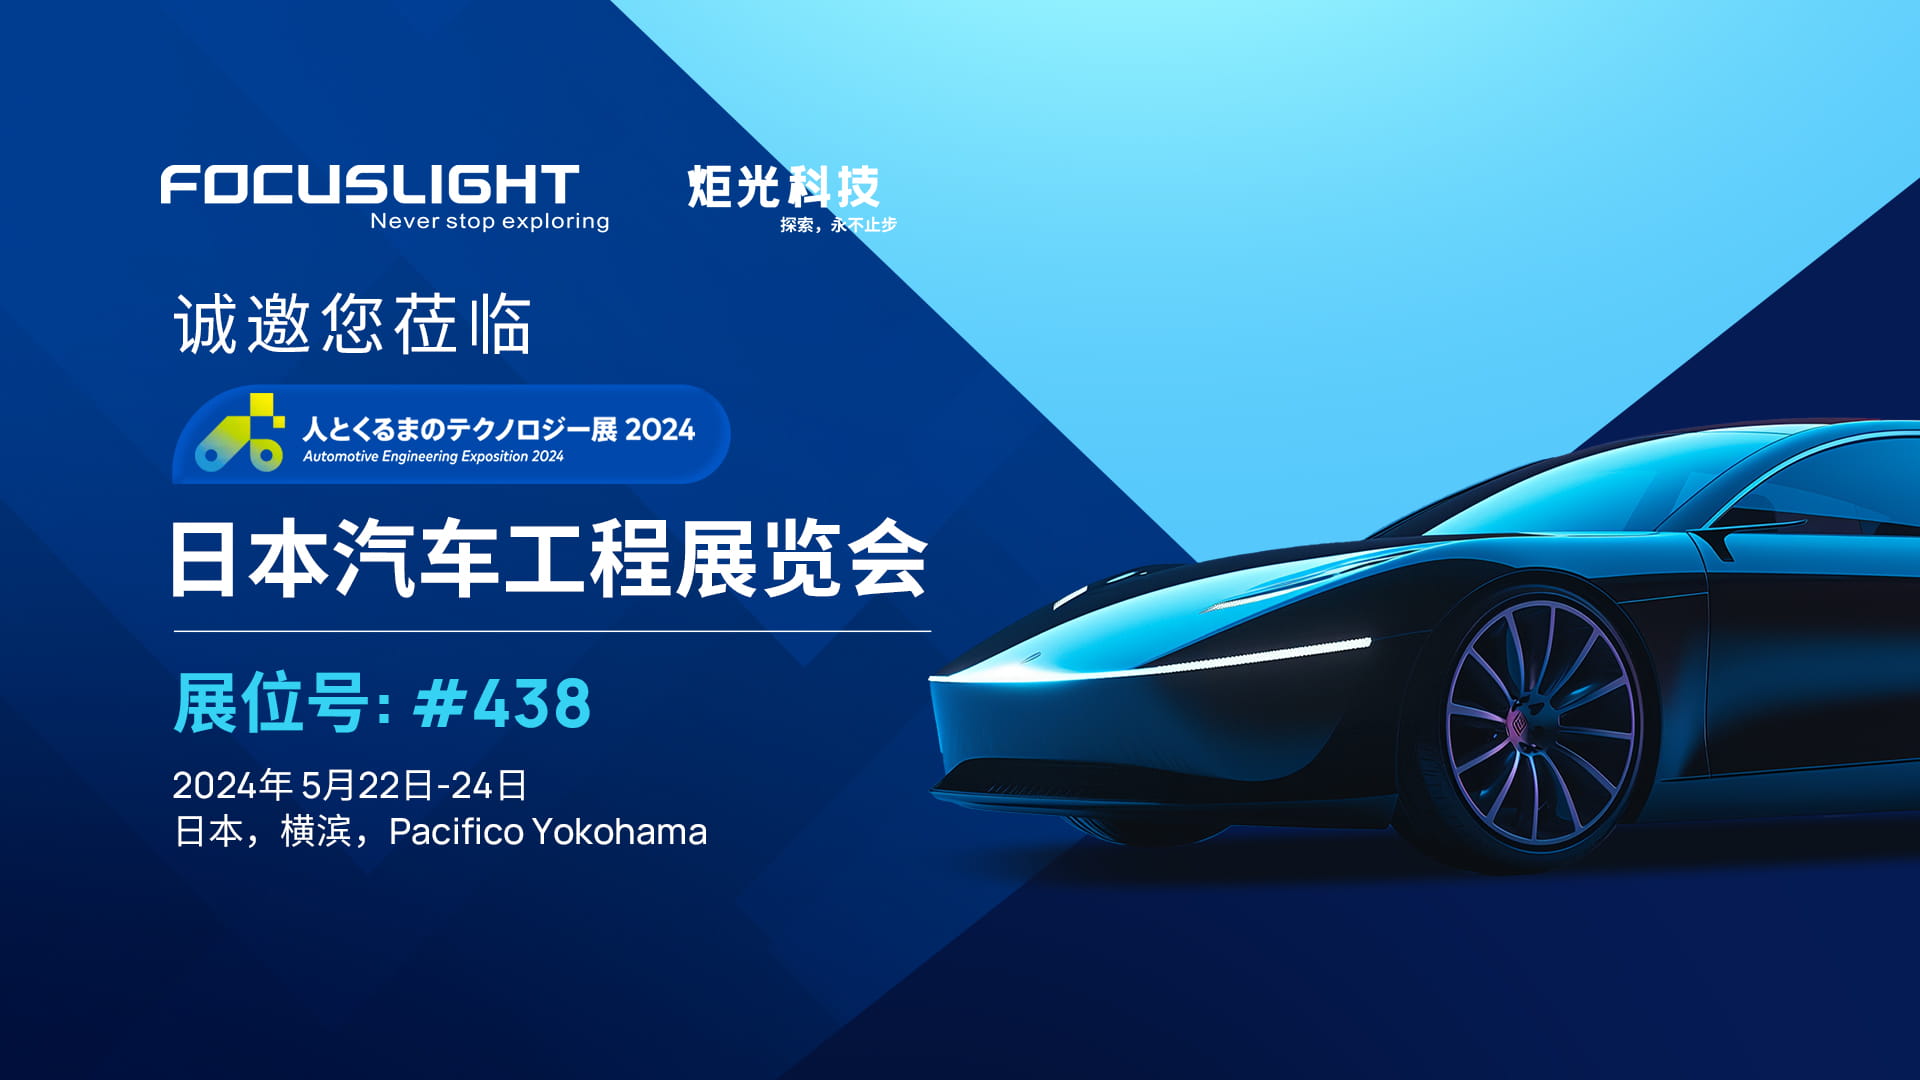 展会预告 | 炬光科技参加2024年日本汽车工程展览会